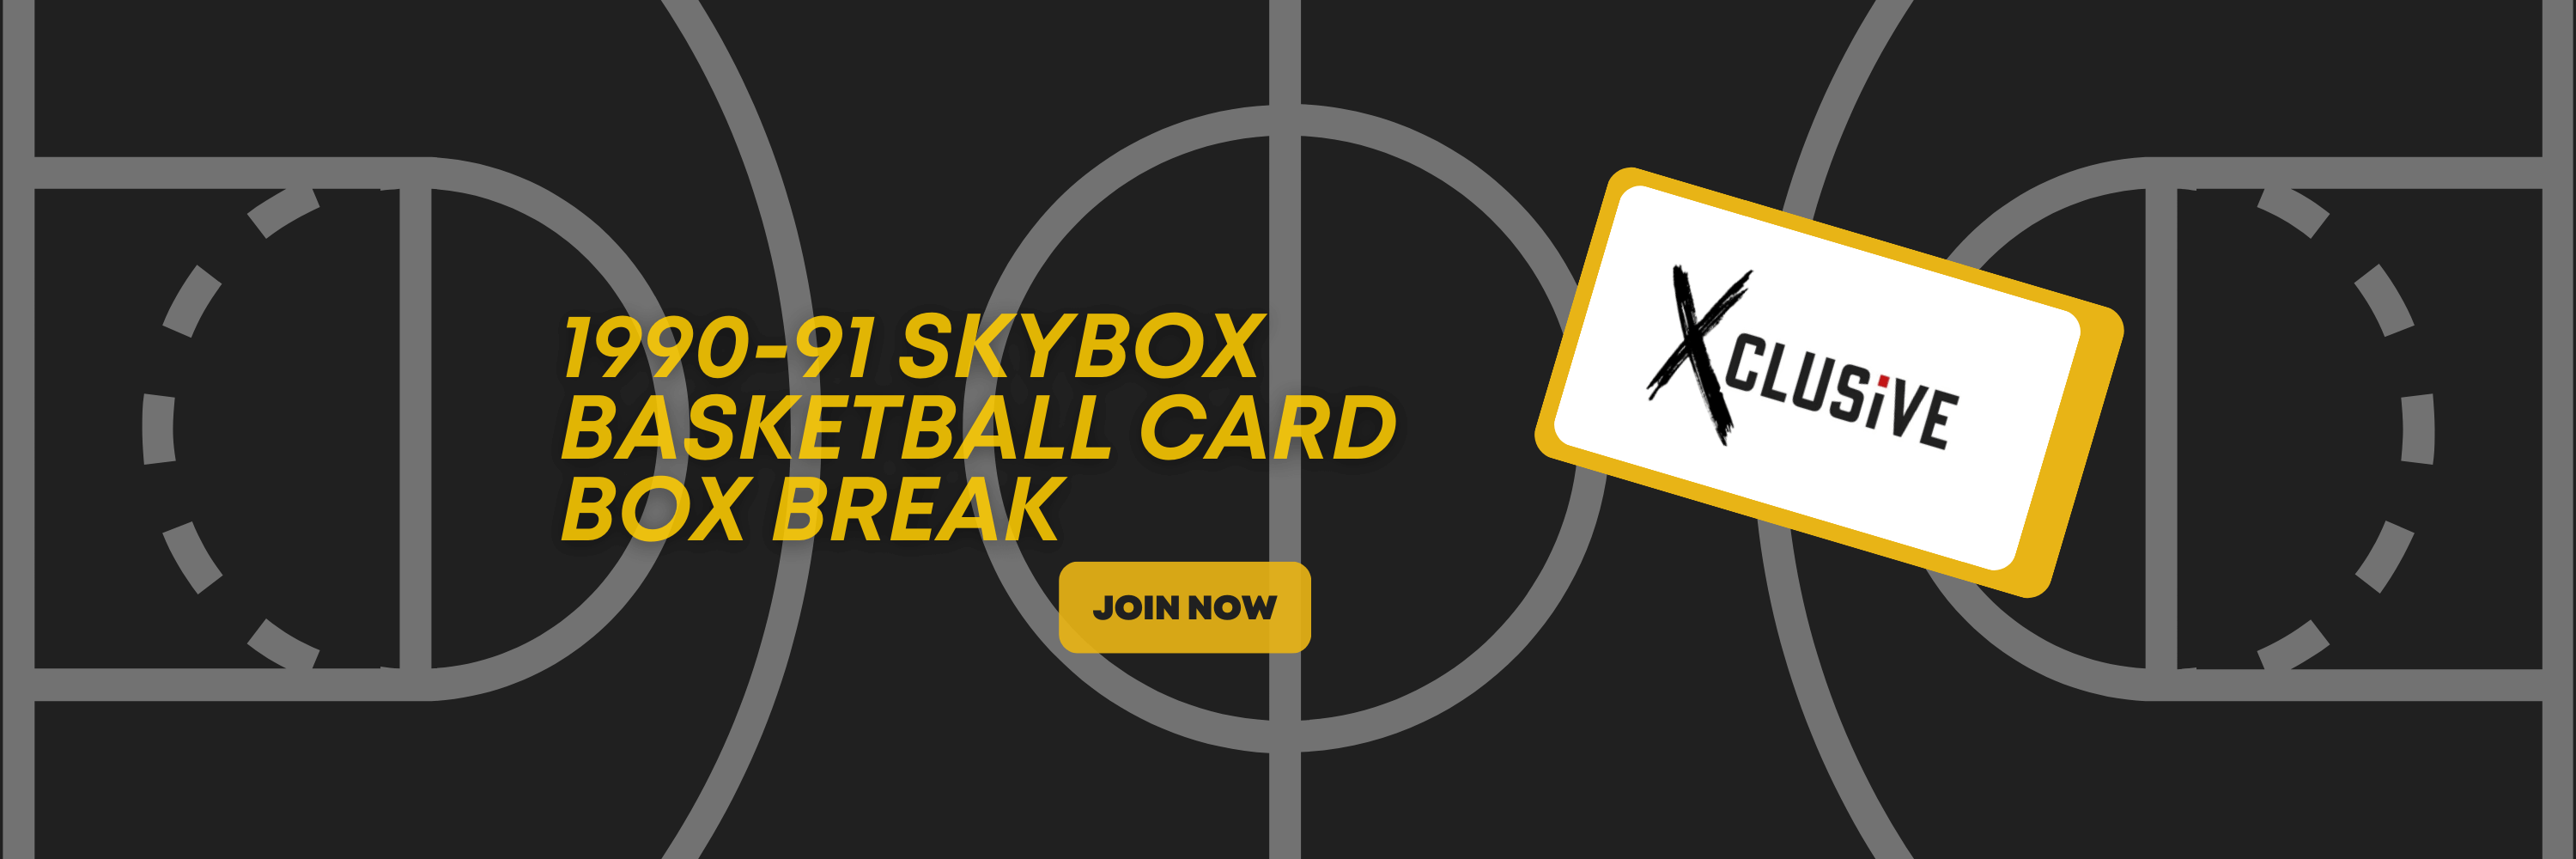 1990-91 Skybox Basketball Card Preview & Box Break: A Trip Down Memory Lane